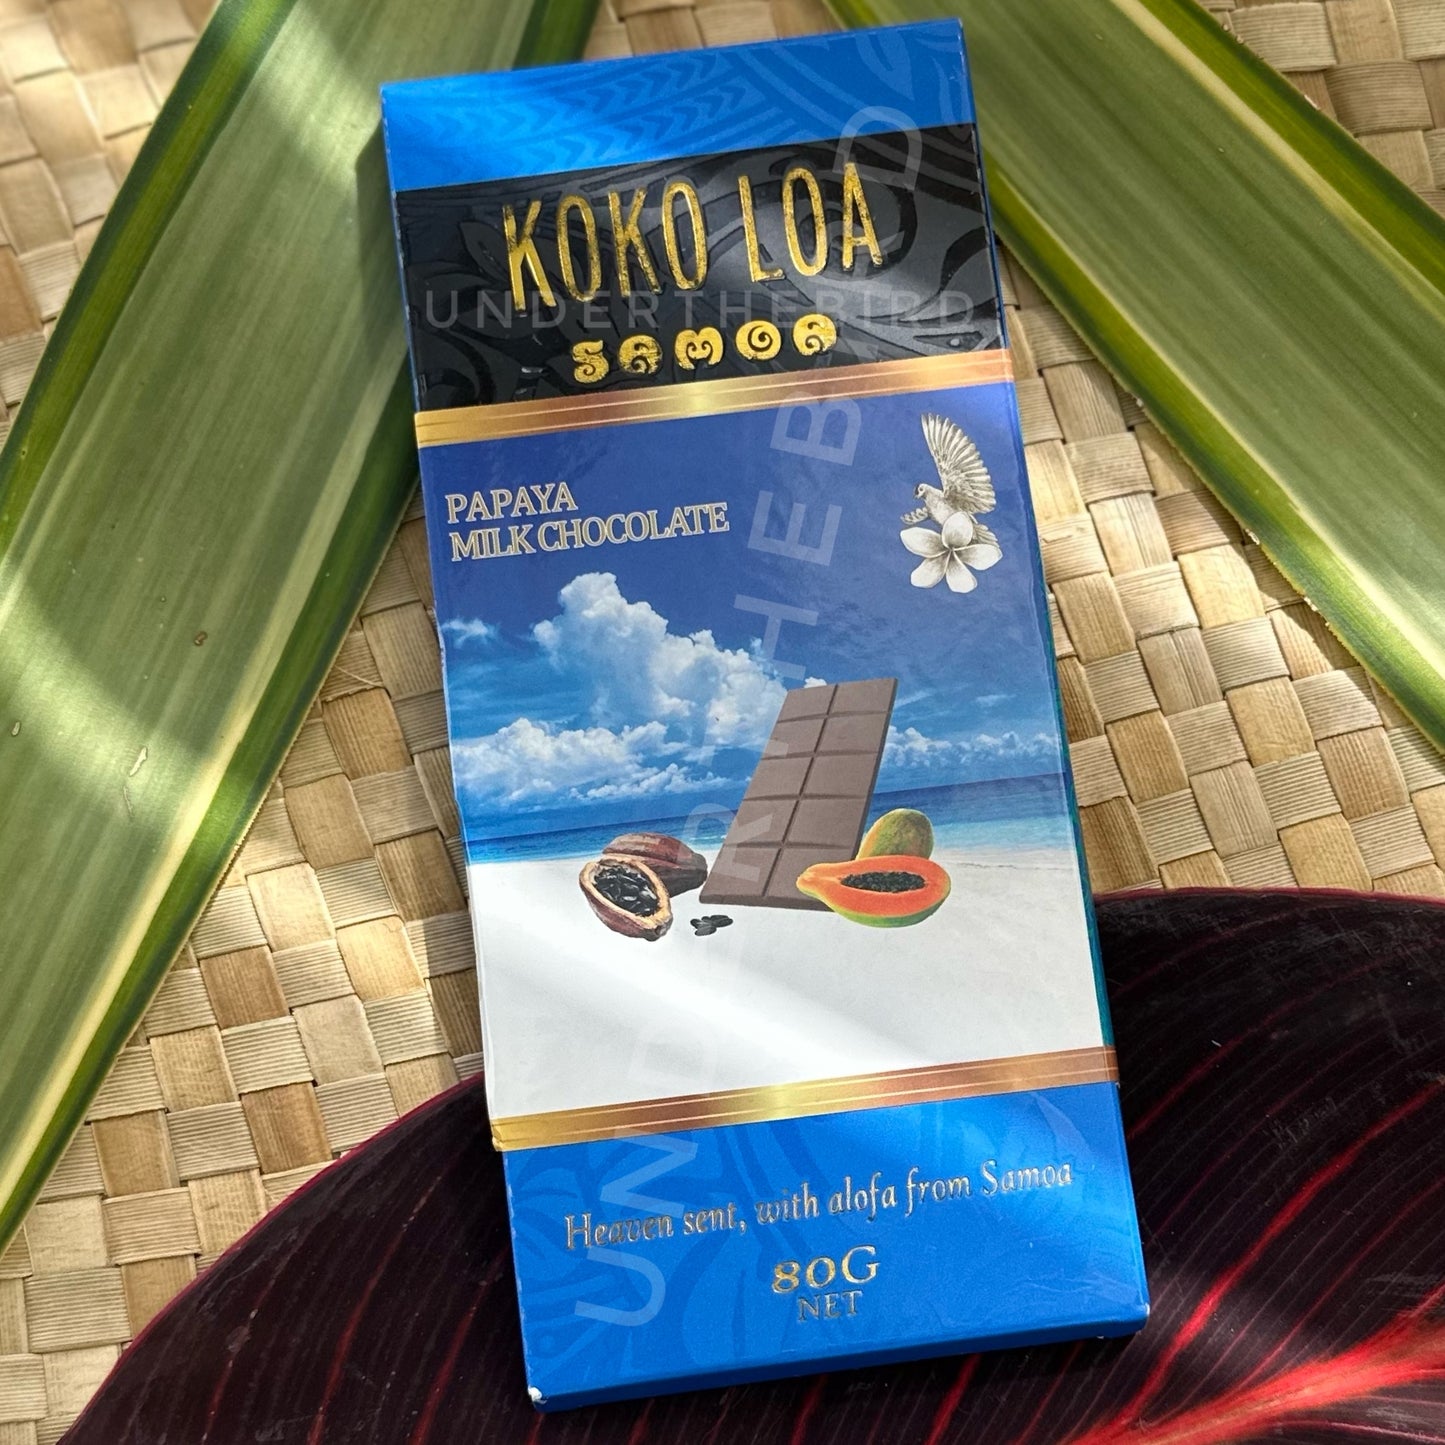 Koko Loa - Premium Samoan Chocolate